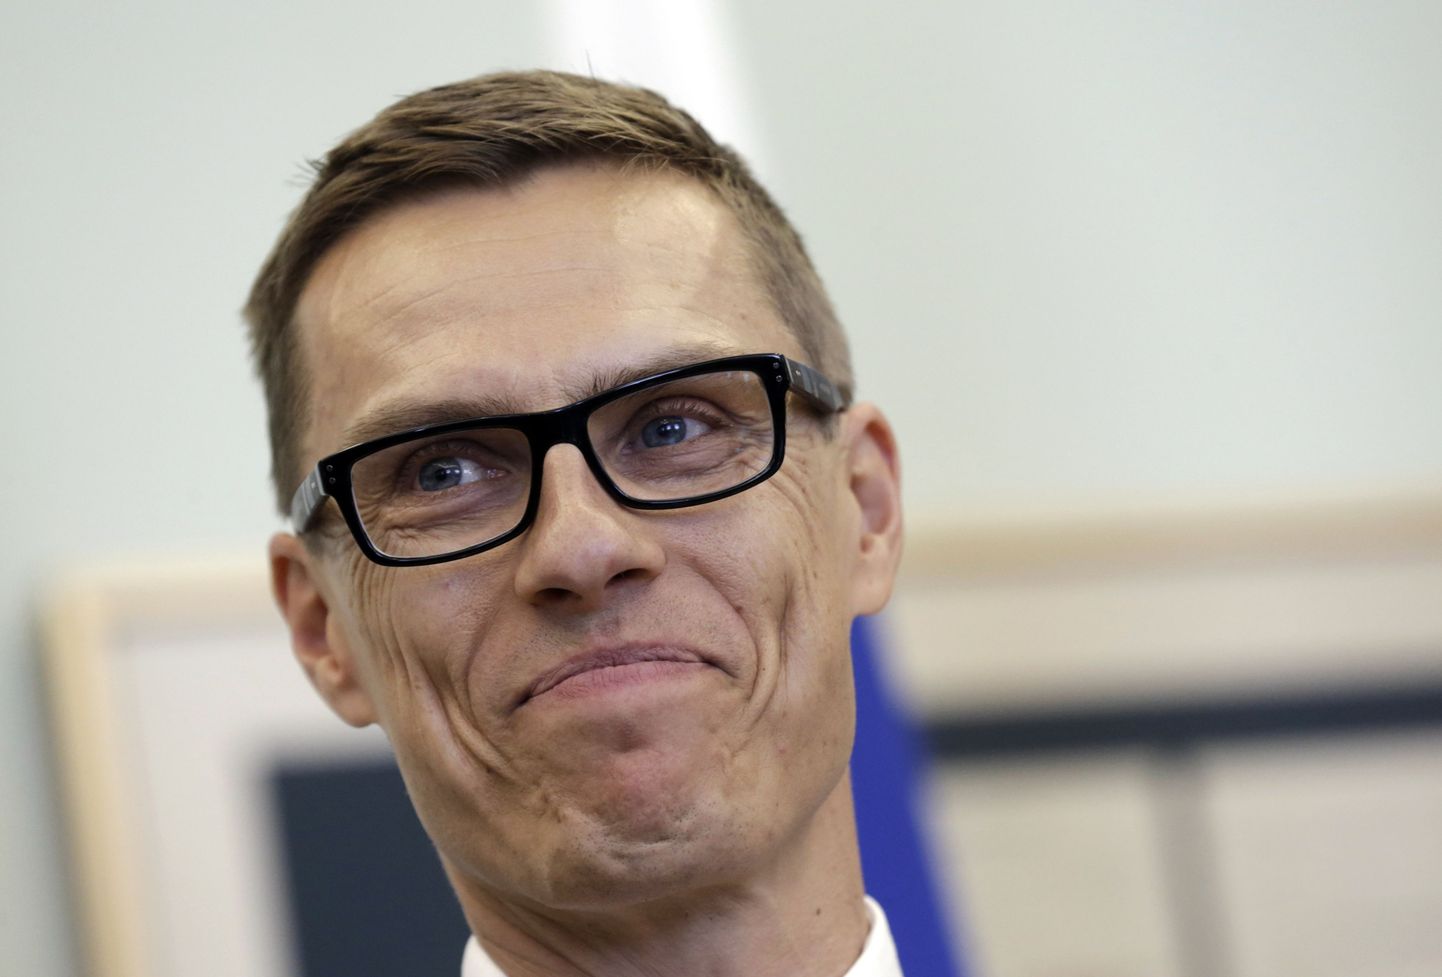 Soome peaminister Alexander Stubb on kinnitanud, et kahtles uute sanktsioonide ajastuses.